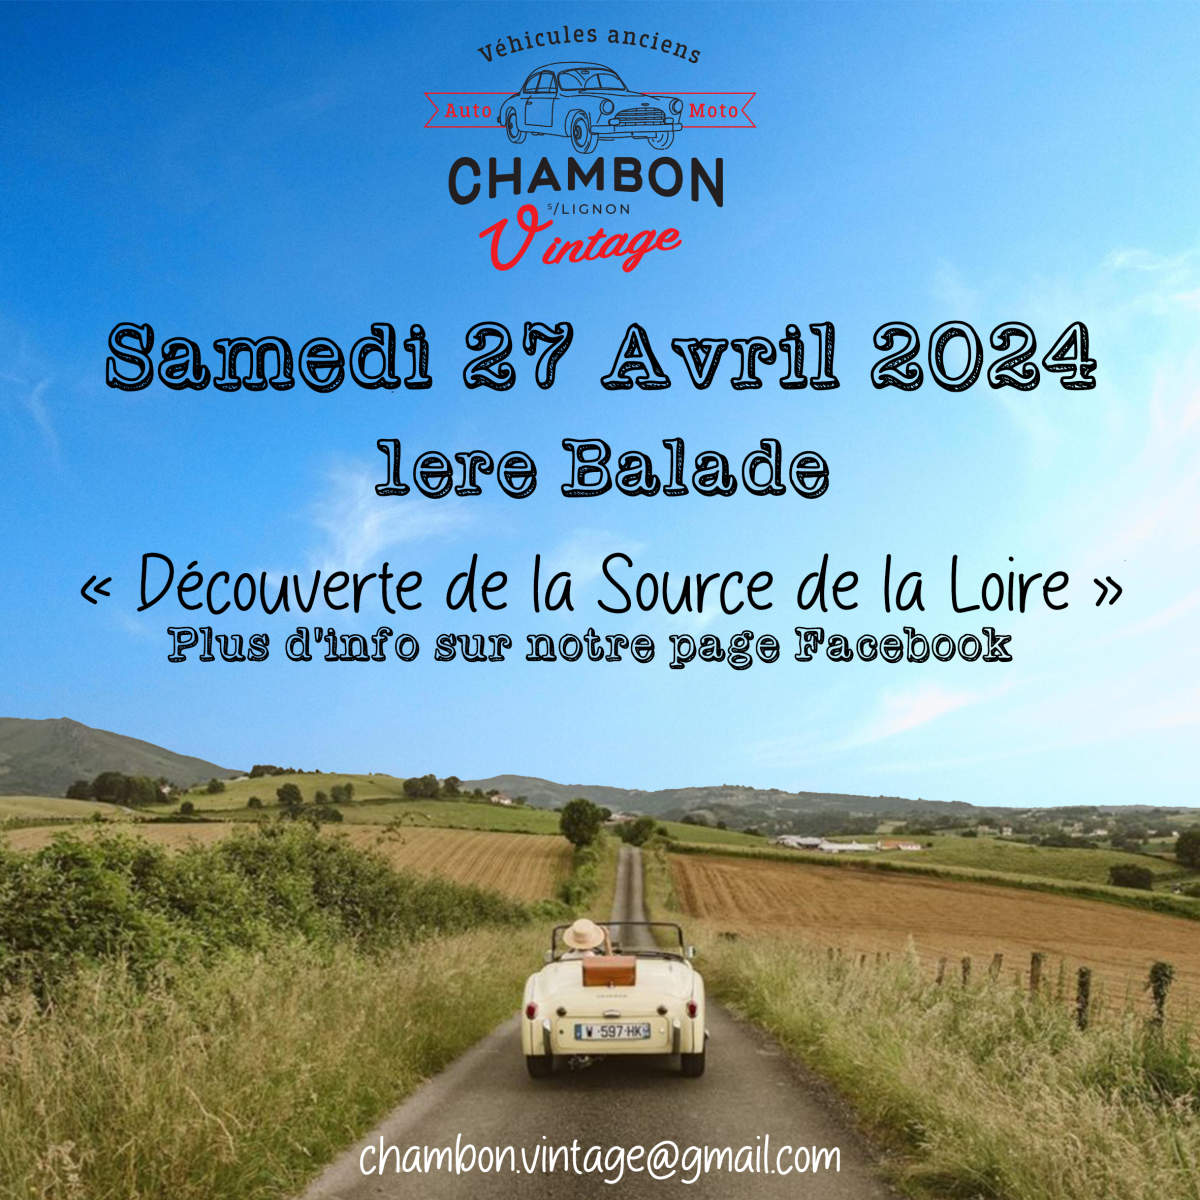 Chambon Vintage "Découverte de la source de la Loire"